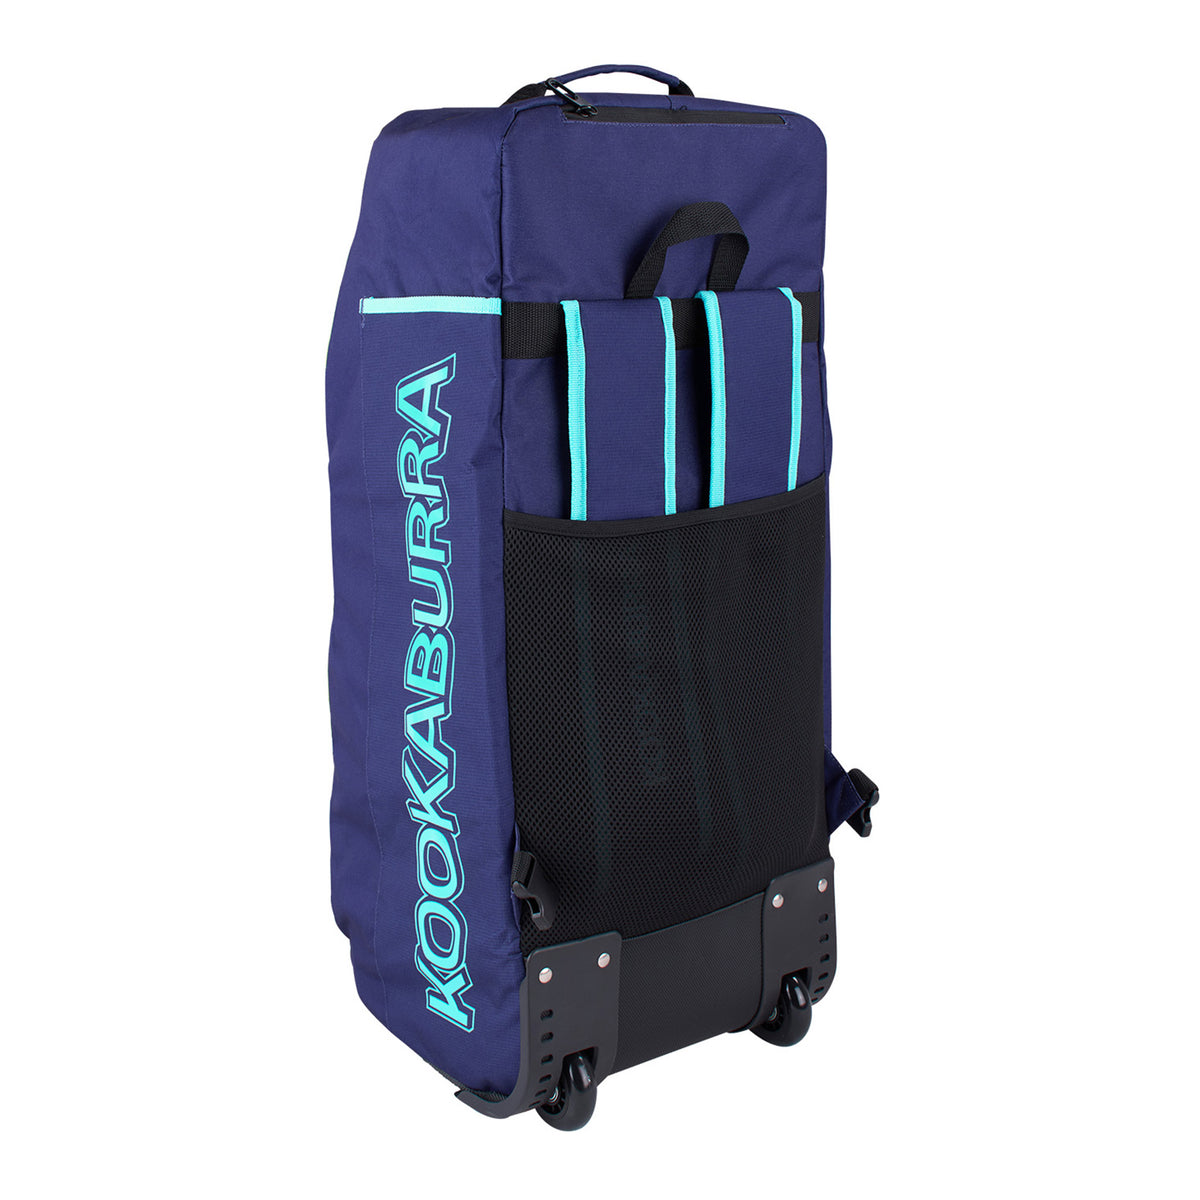 Kookaburra wd6000 Wheelie Duffle Bag: Navy/Aqua